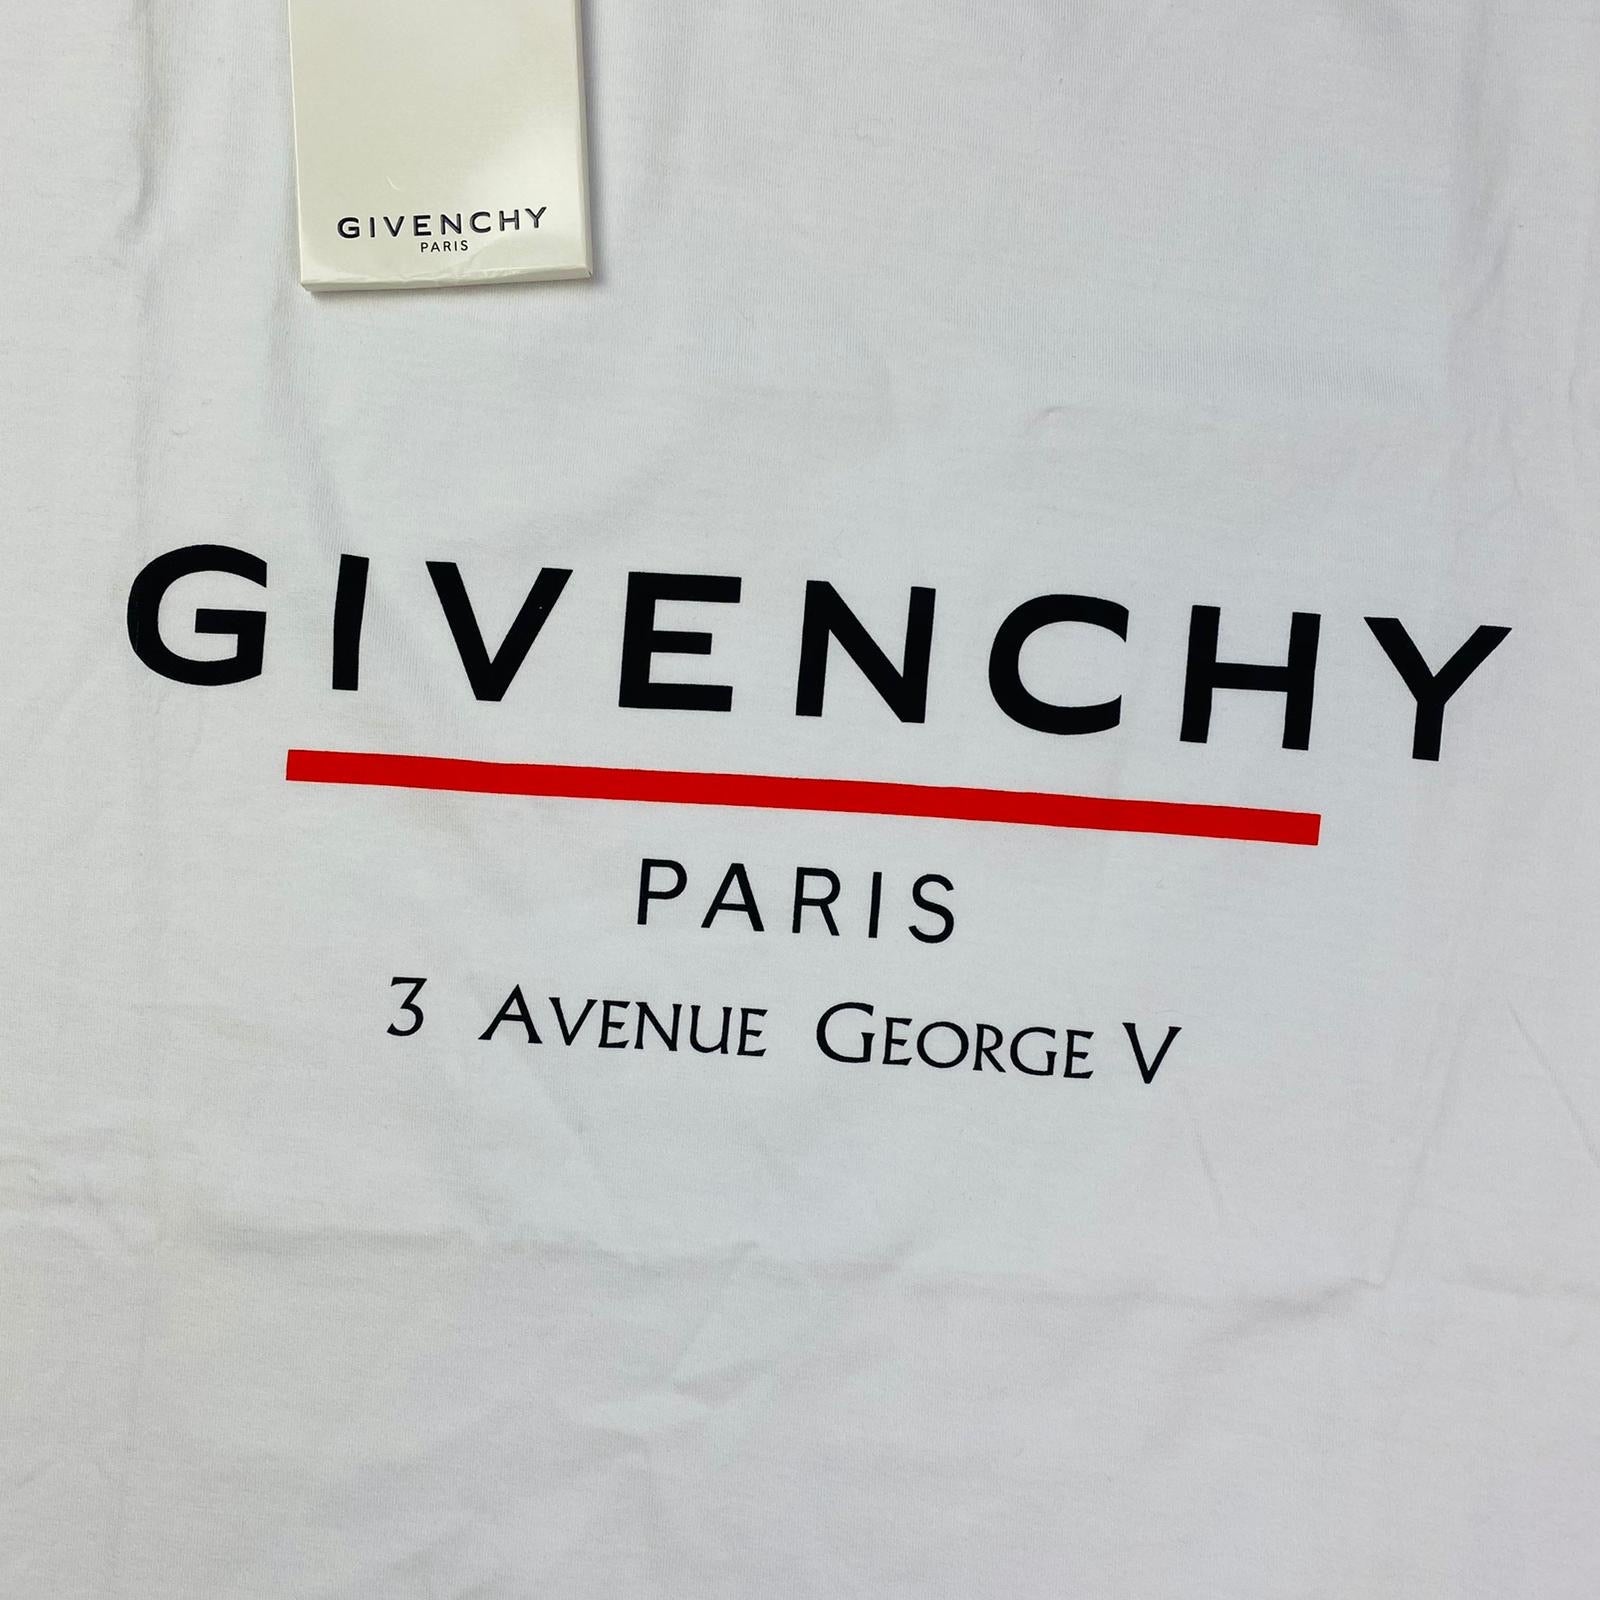 Givenchy Printed T-Shirt